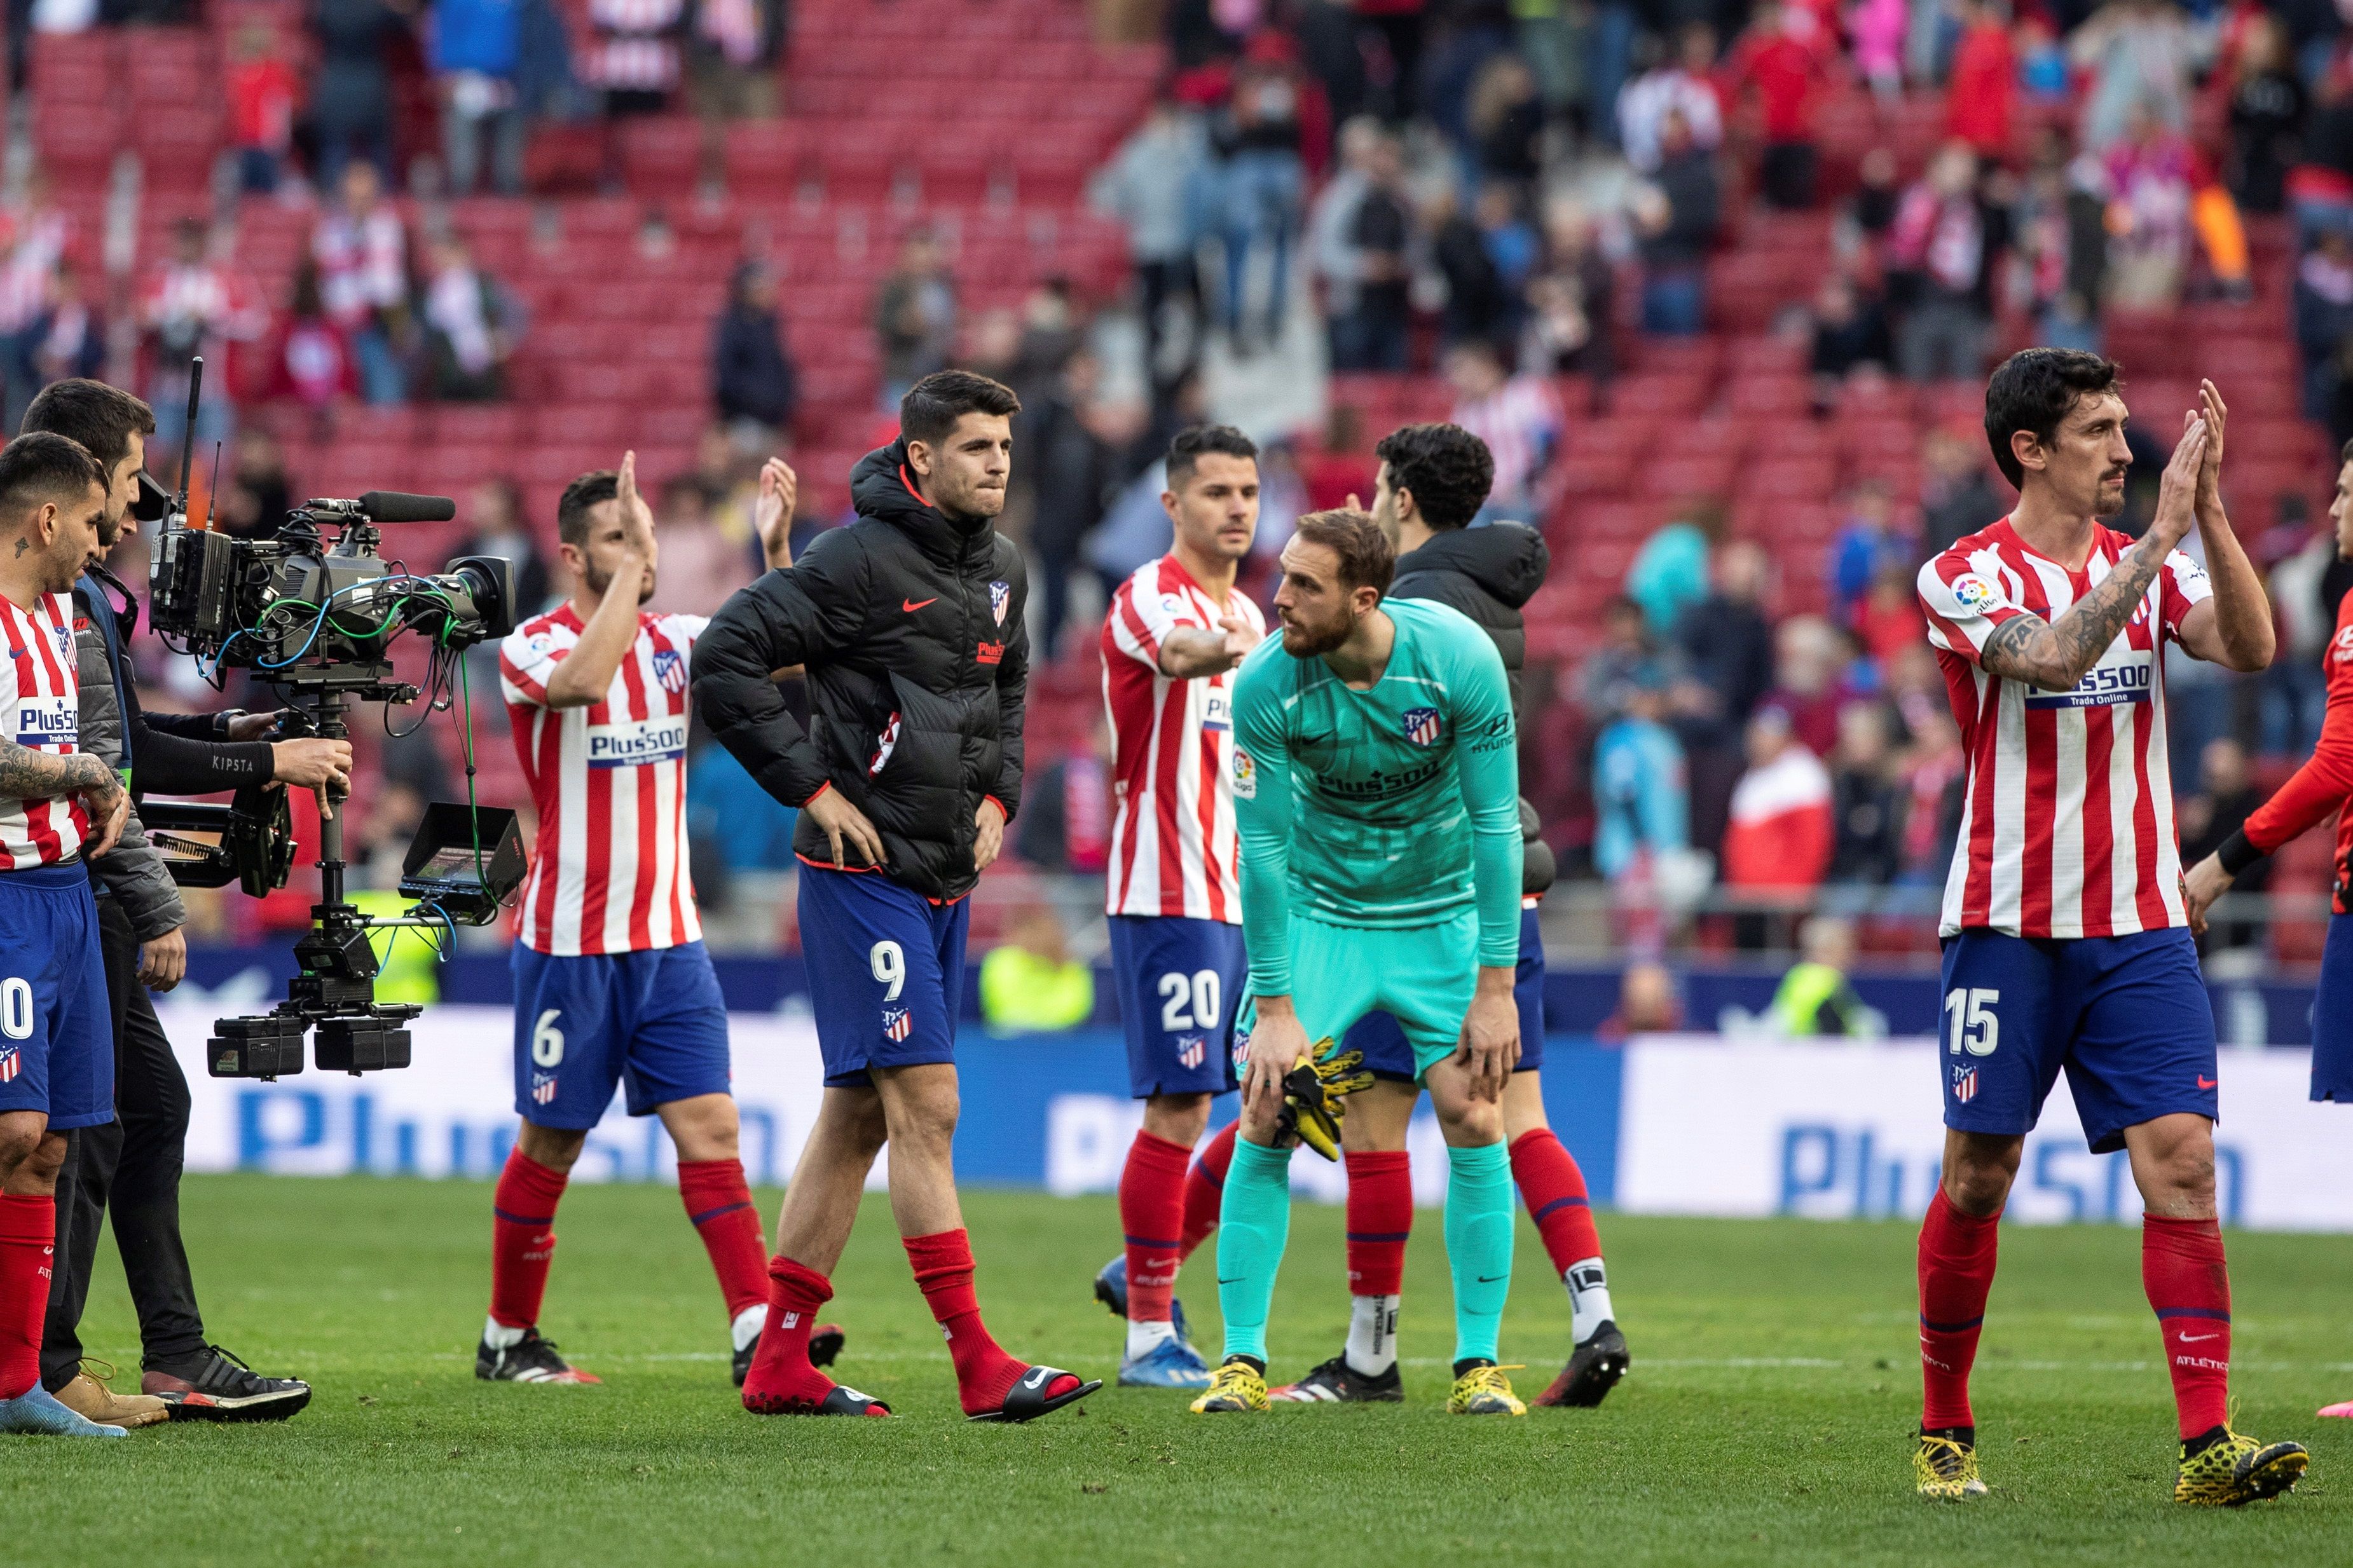 Los jugadores del Atlético de Madrid se preparan para el posible regreso. (Foto Prensa Libre: EFE)